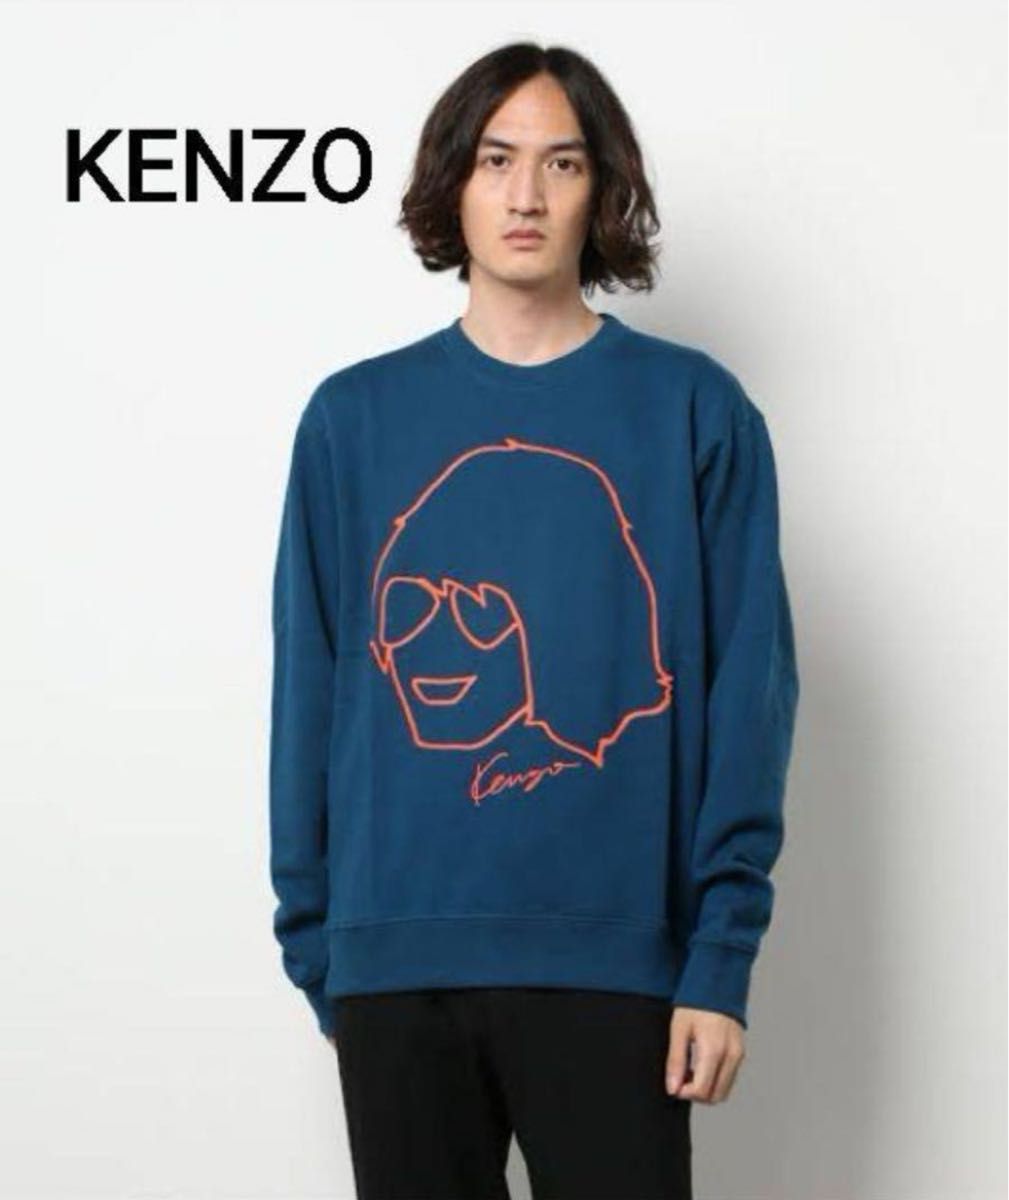 KENZO 似顔絵 スウェット 高田賢三 2021AW ブルー XLサイズ 美品